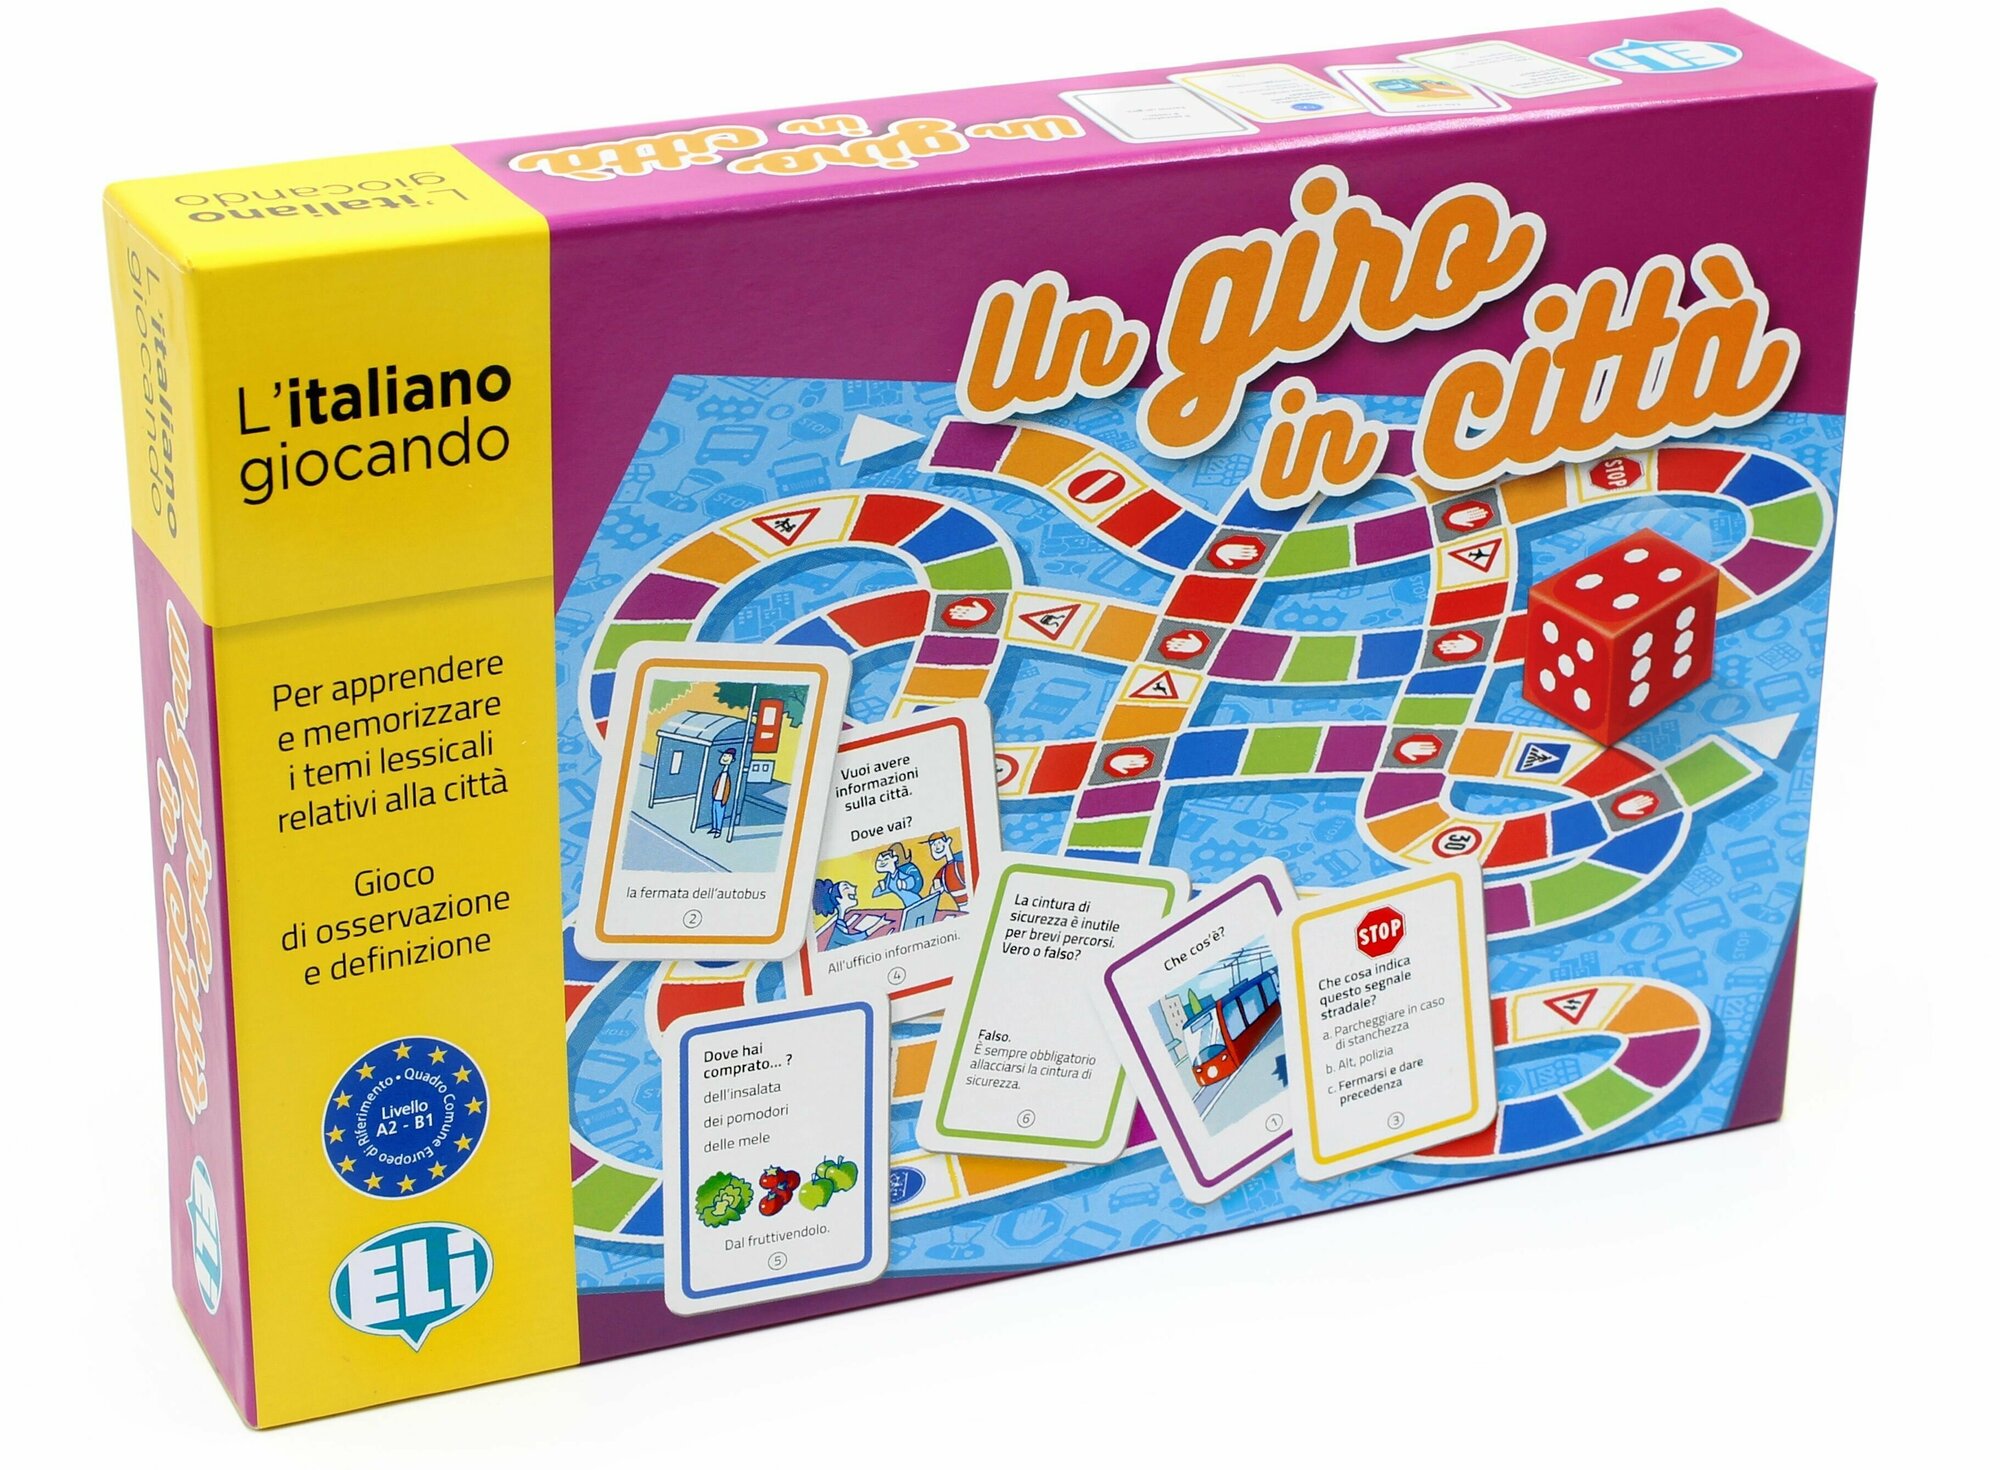 UN GIRO IN CITTA (A2-B1) / Обучающая игра на итальянском языке "Прогулка по городу"